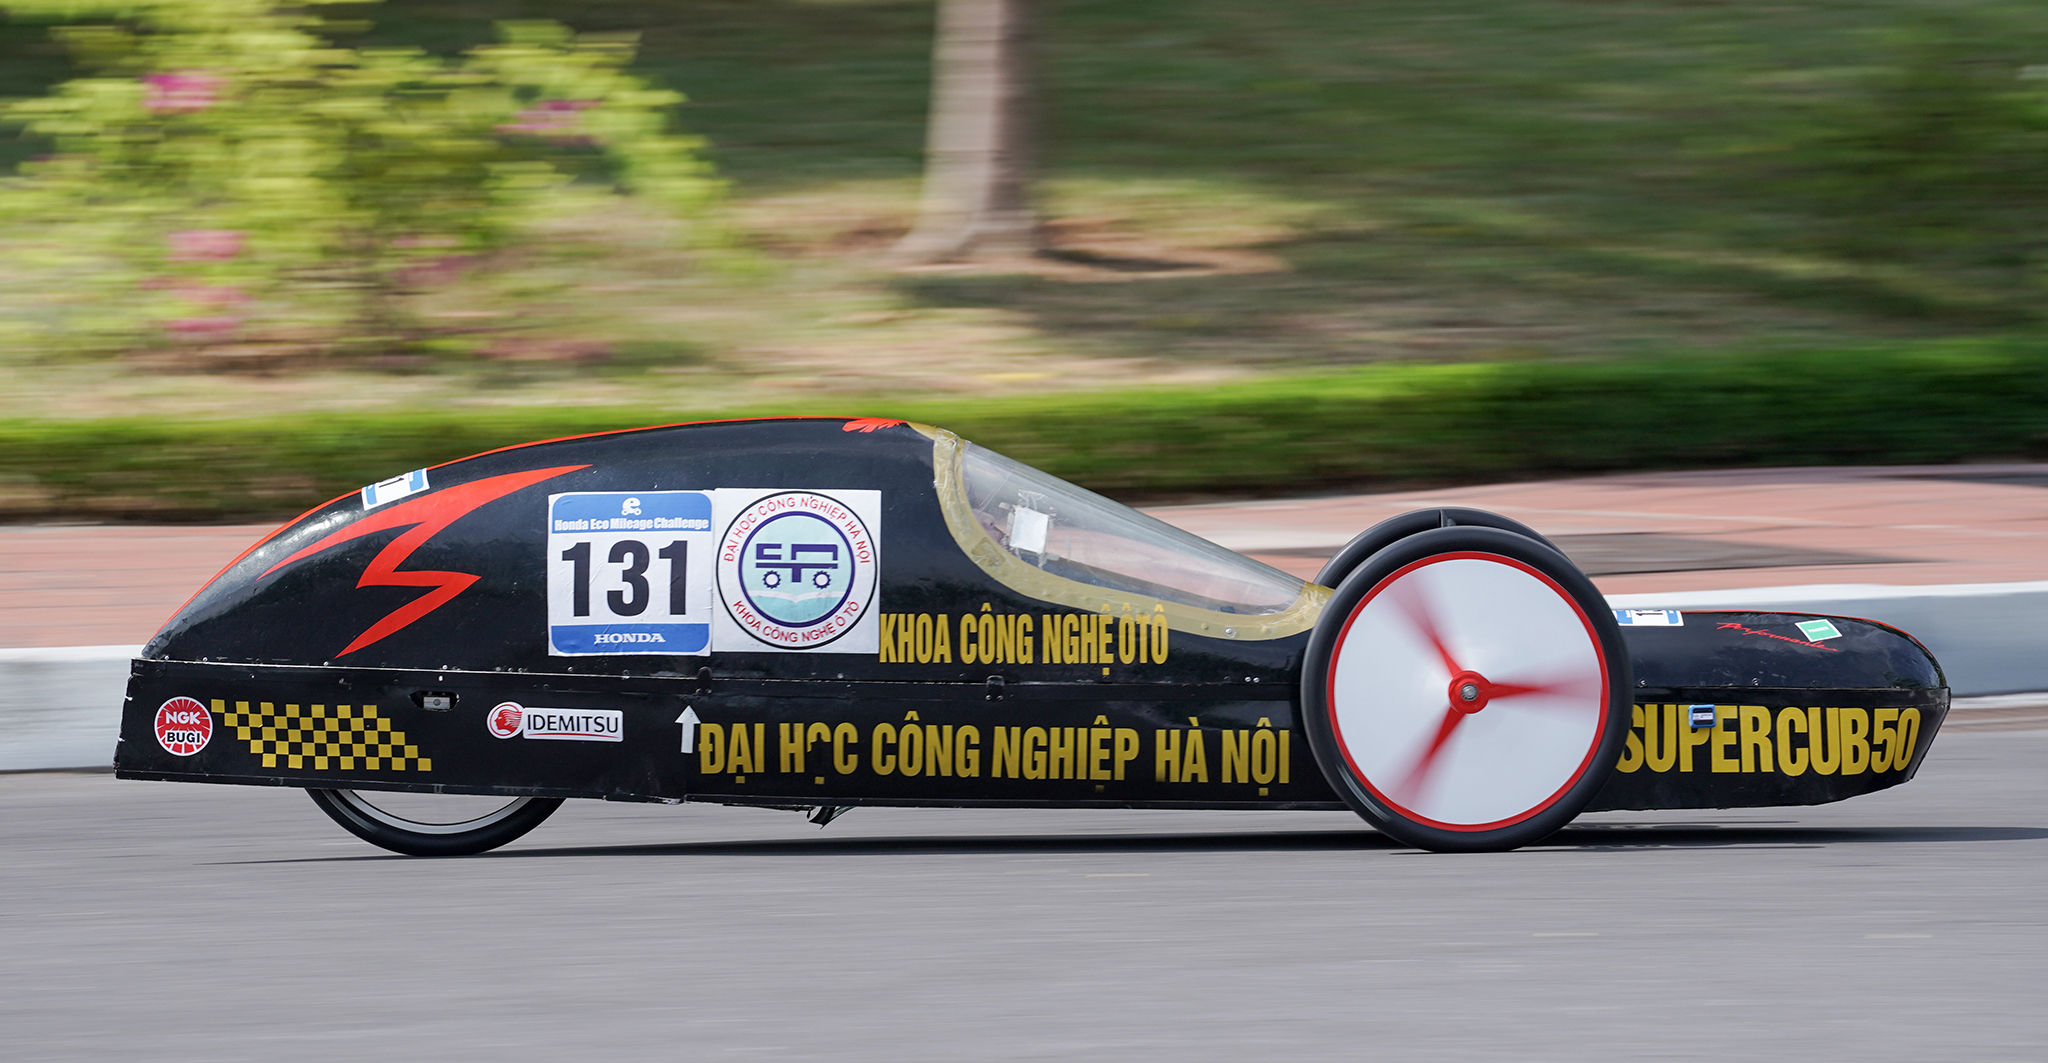 Sinh viên Việt chế tạo xe đi được hơn 900 km với chỉ 1 lít xăng